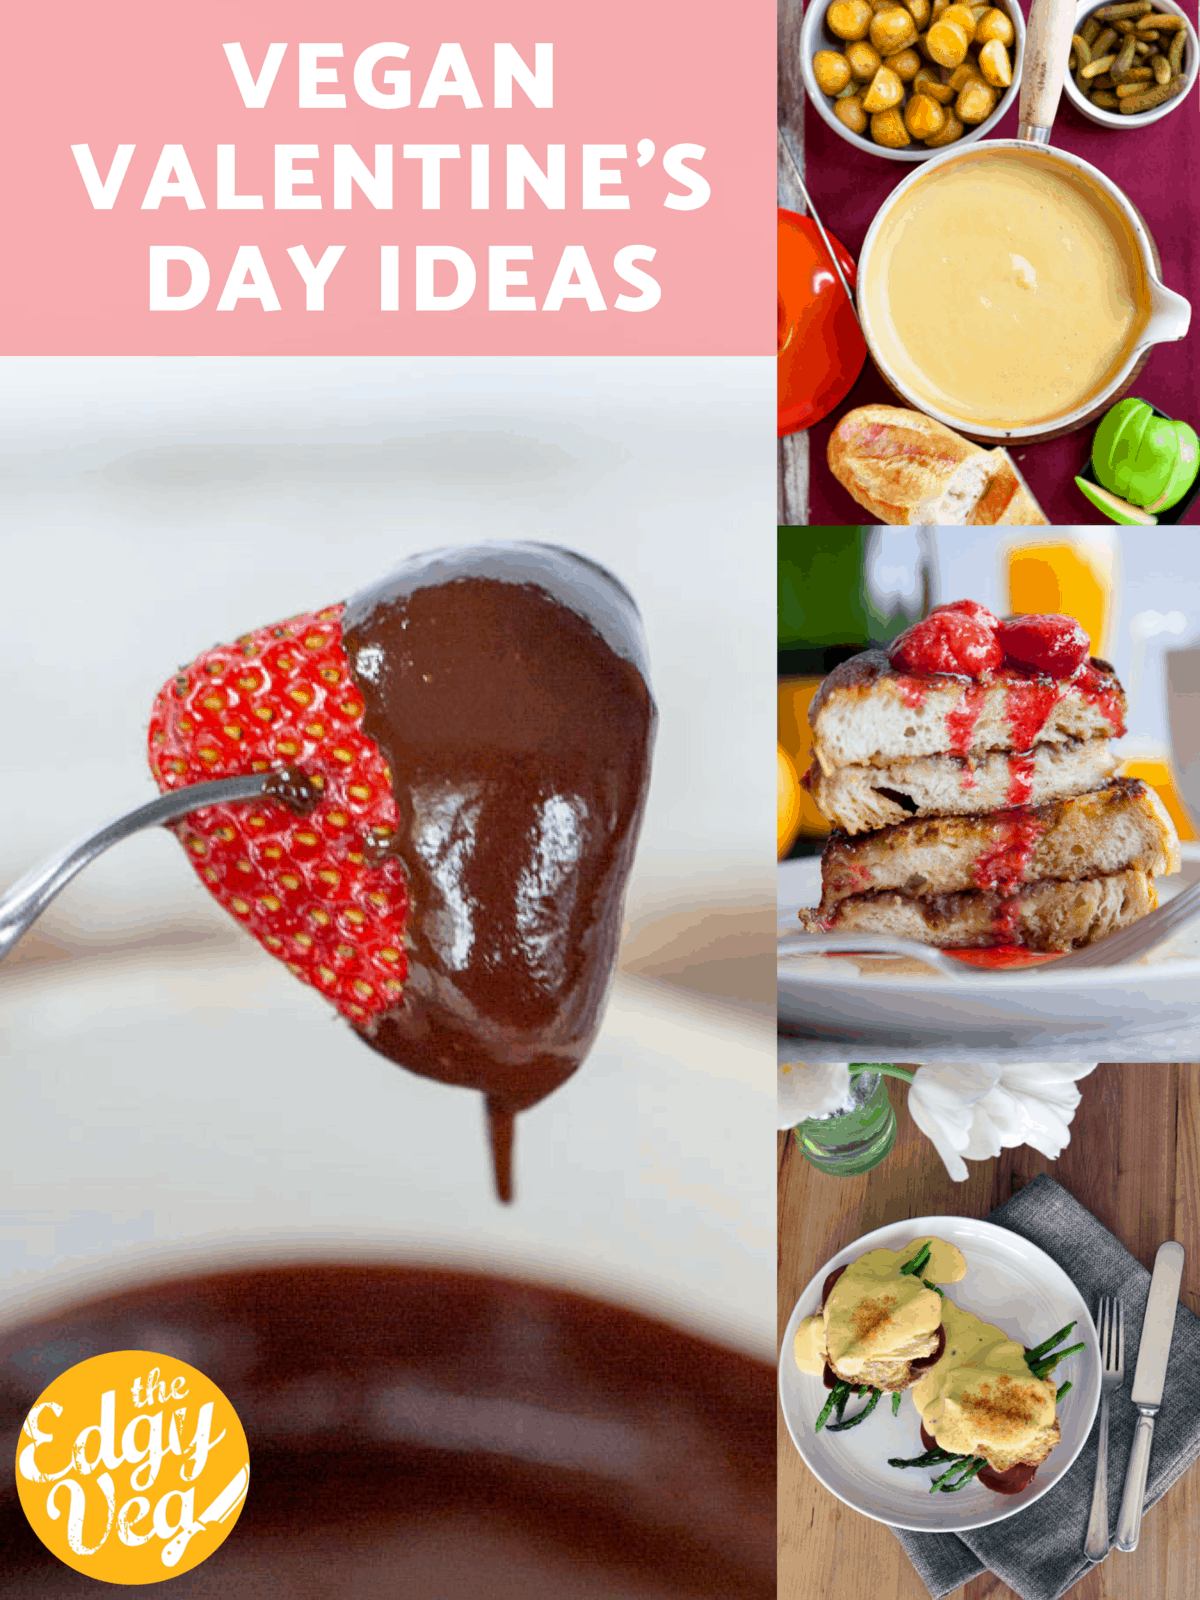 Vegan Dinner Ideas for Valentine’s Day